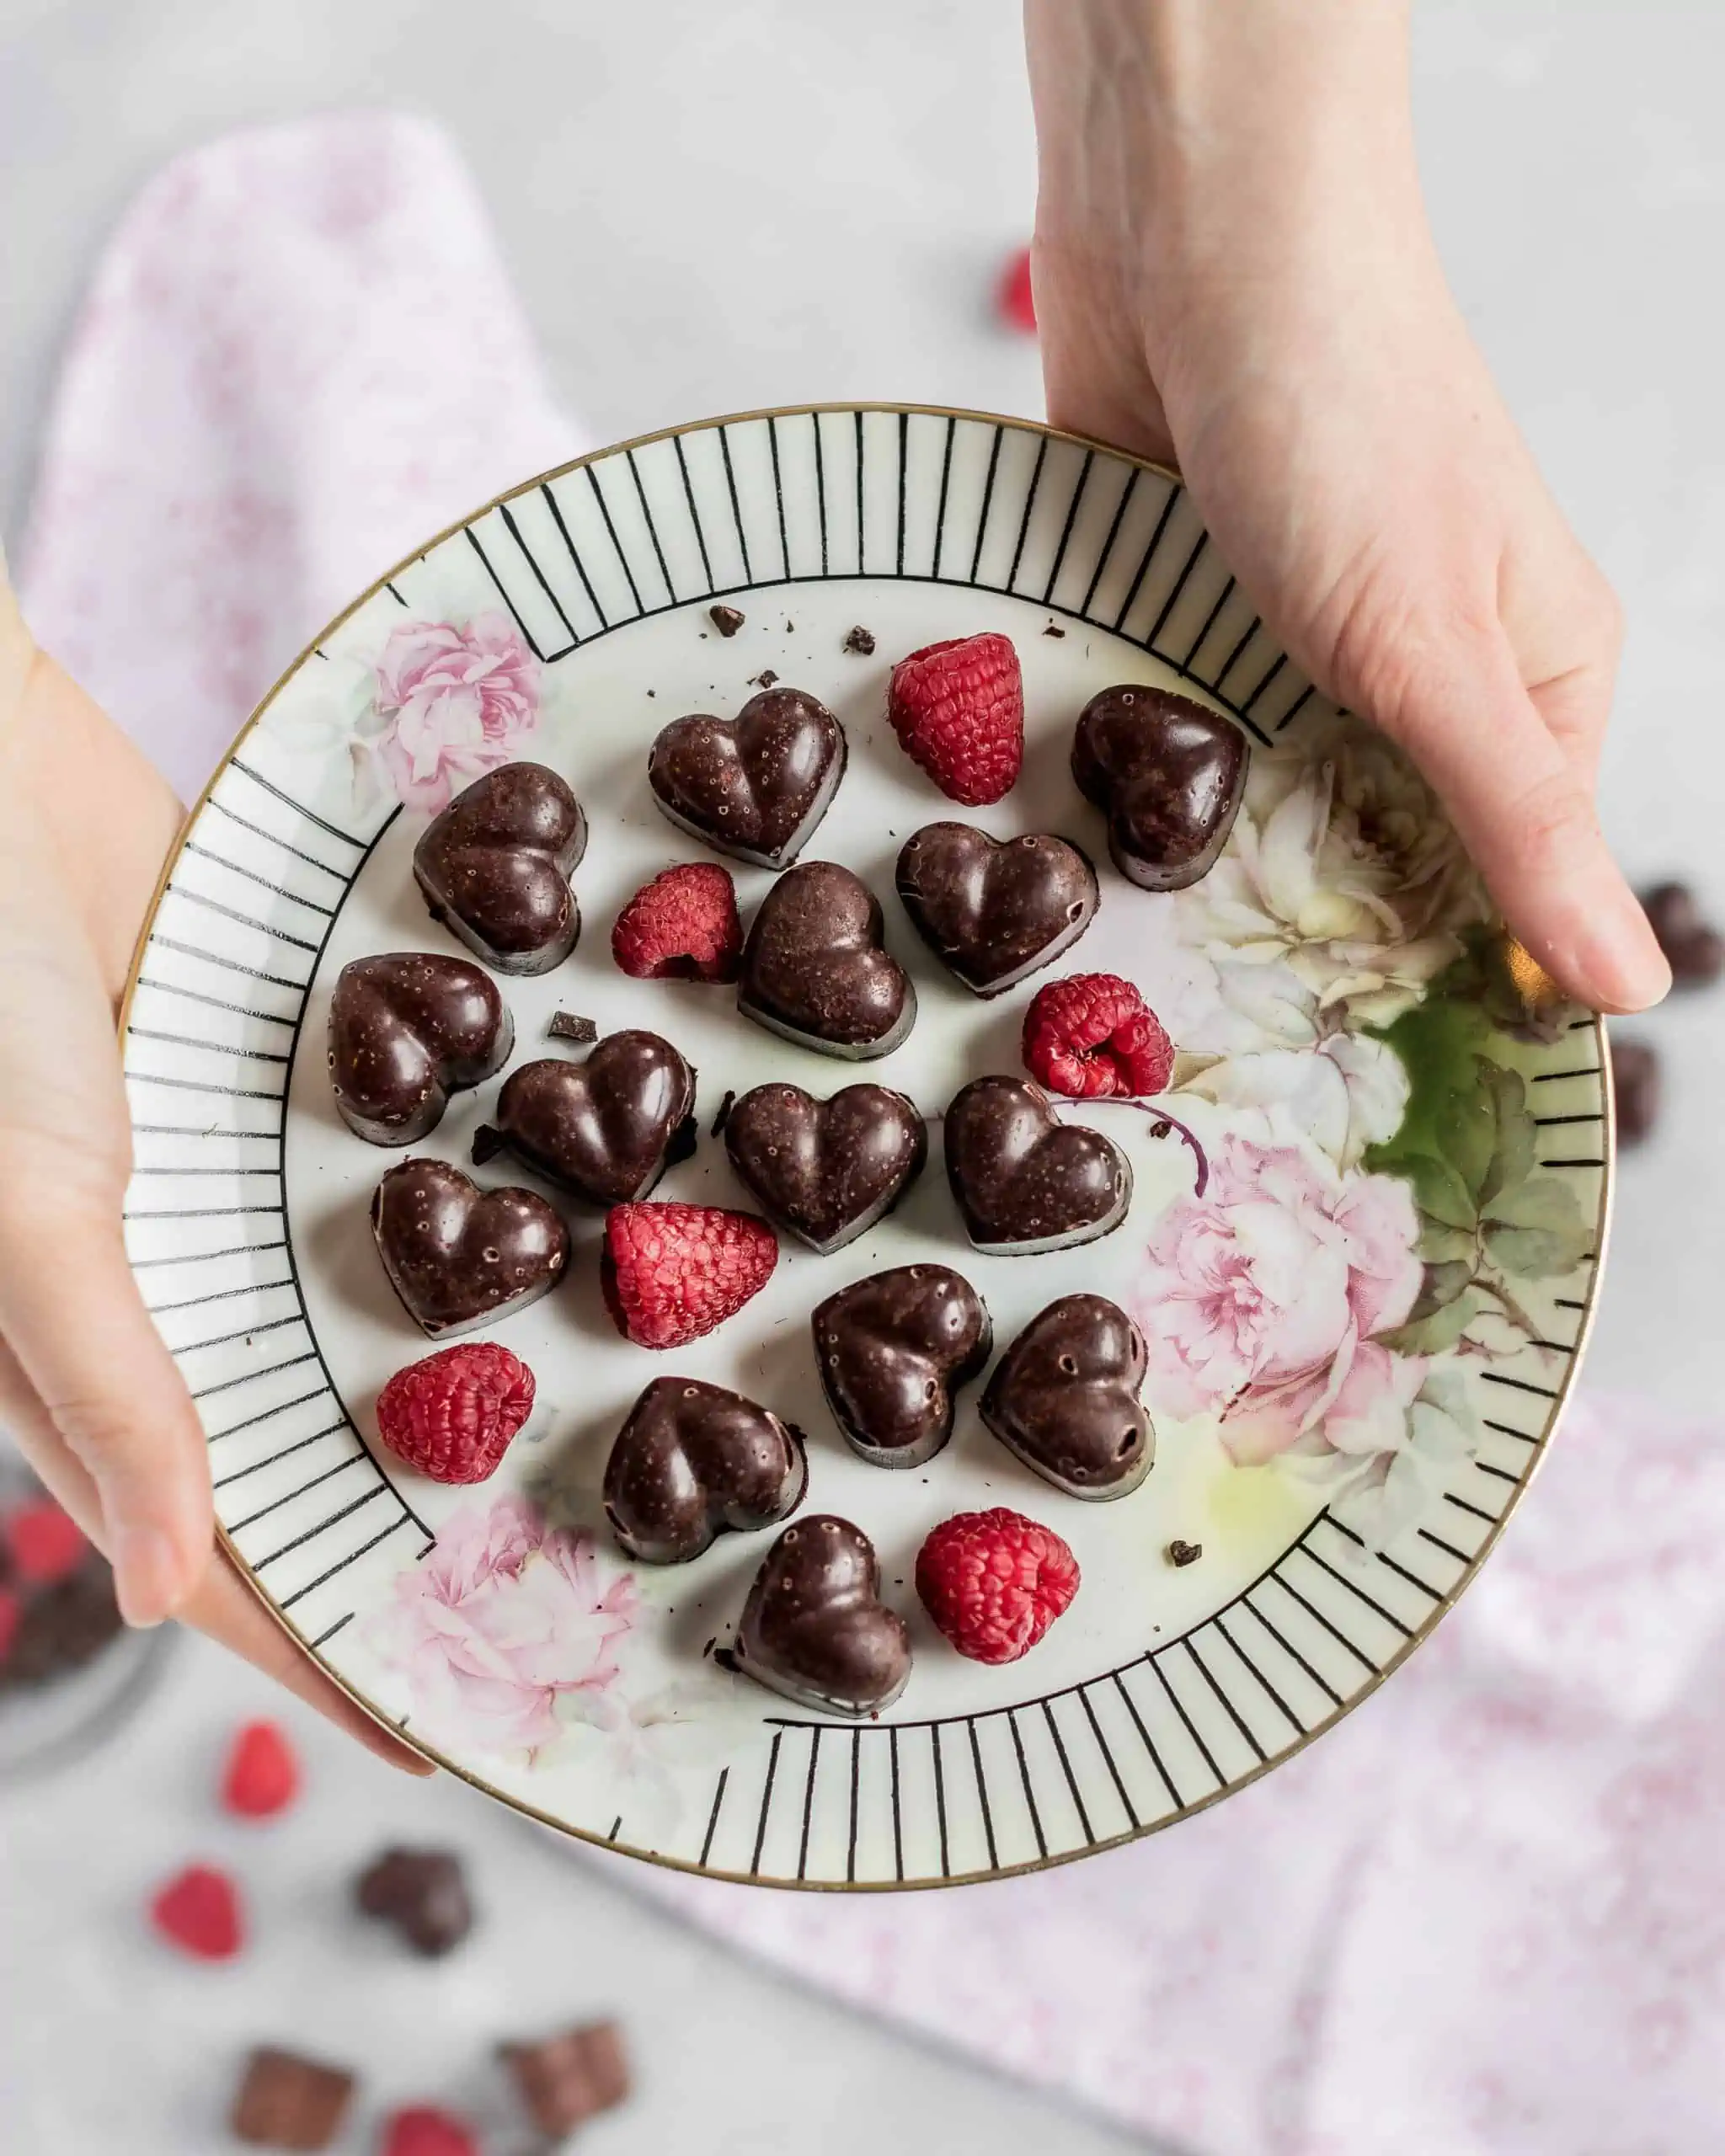 https://www.eatlovenamaste.com/wp-content/uploads/2018/01/Rasberry-Chocolate-Truffles-IMG4-scaled.webp